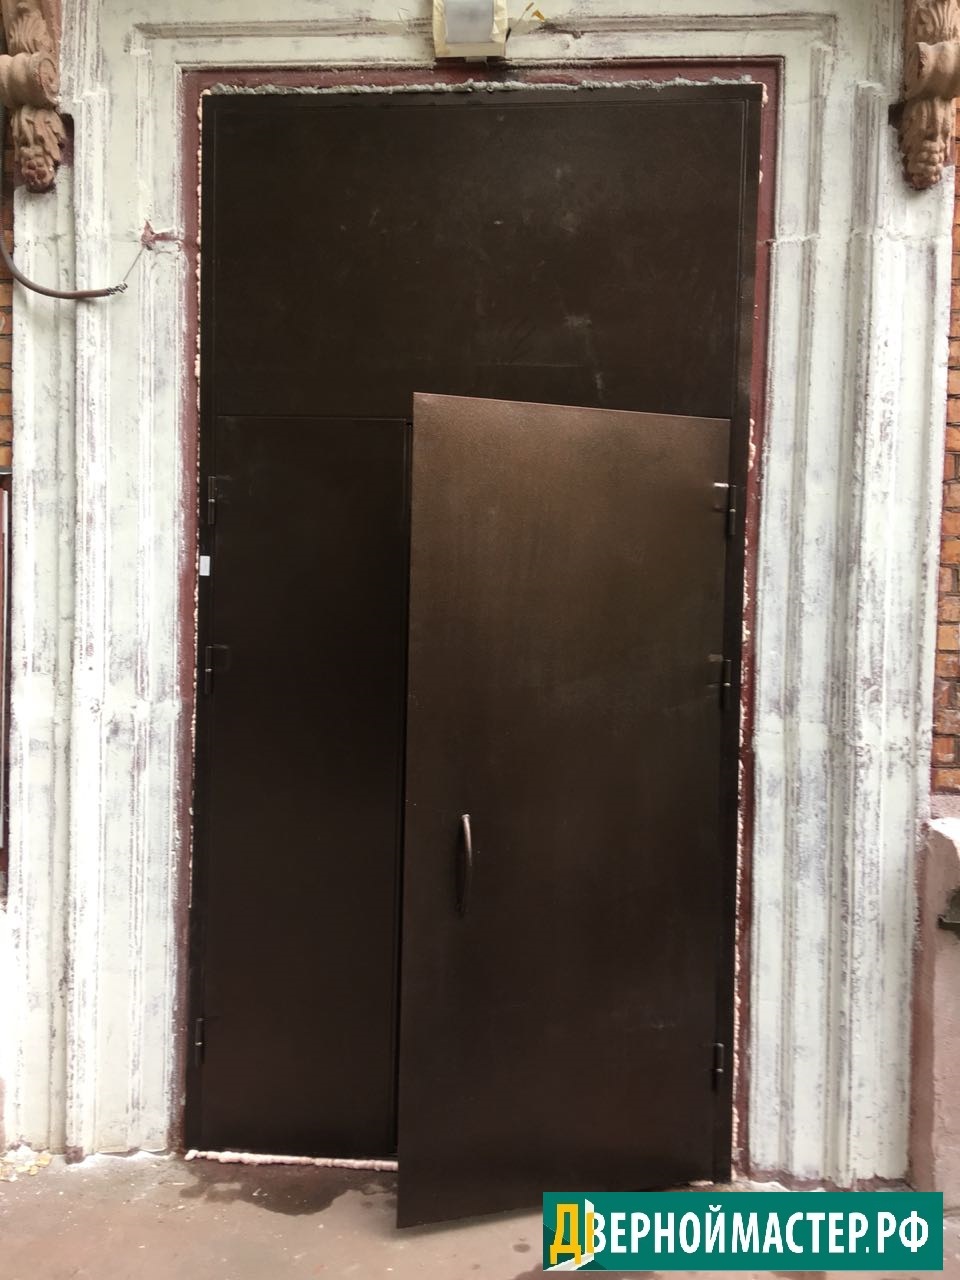 Металлическая входная дверь большого размера в подъезде